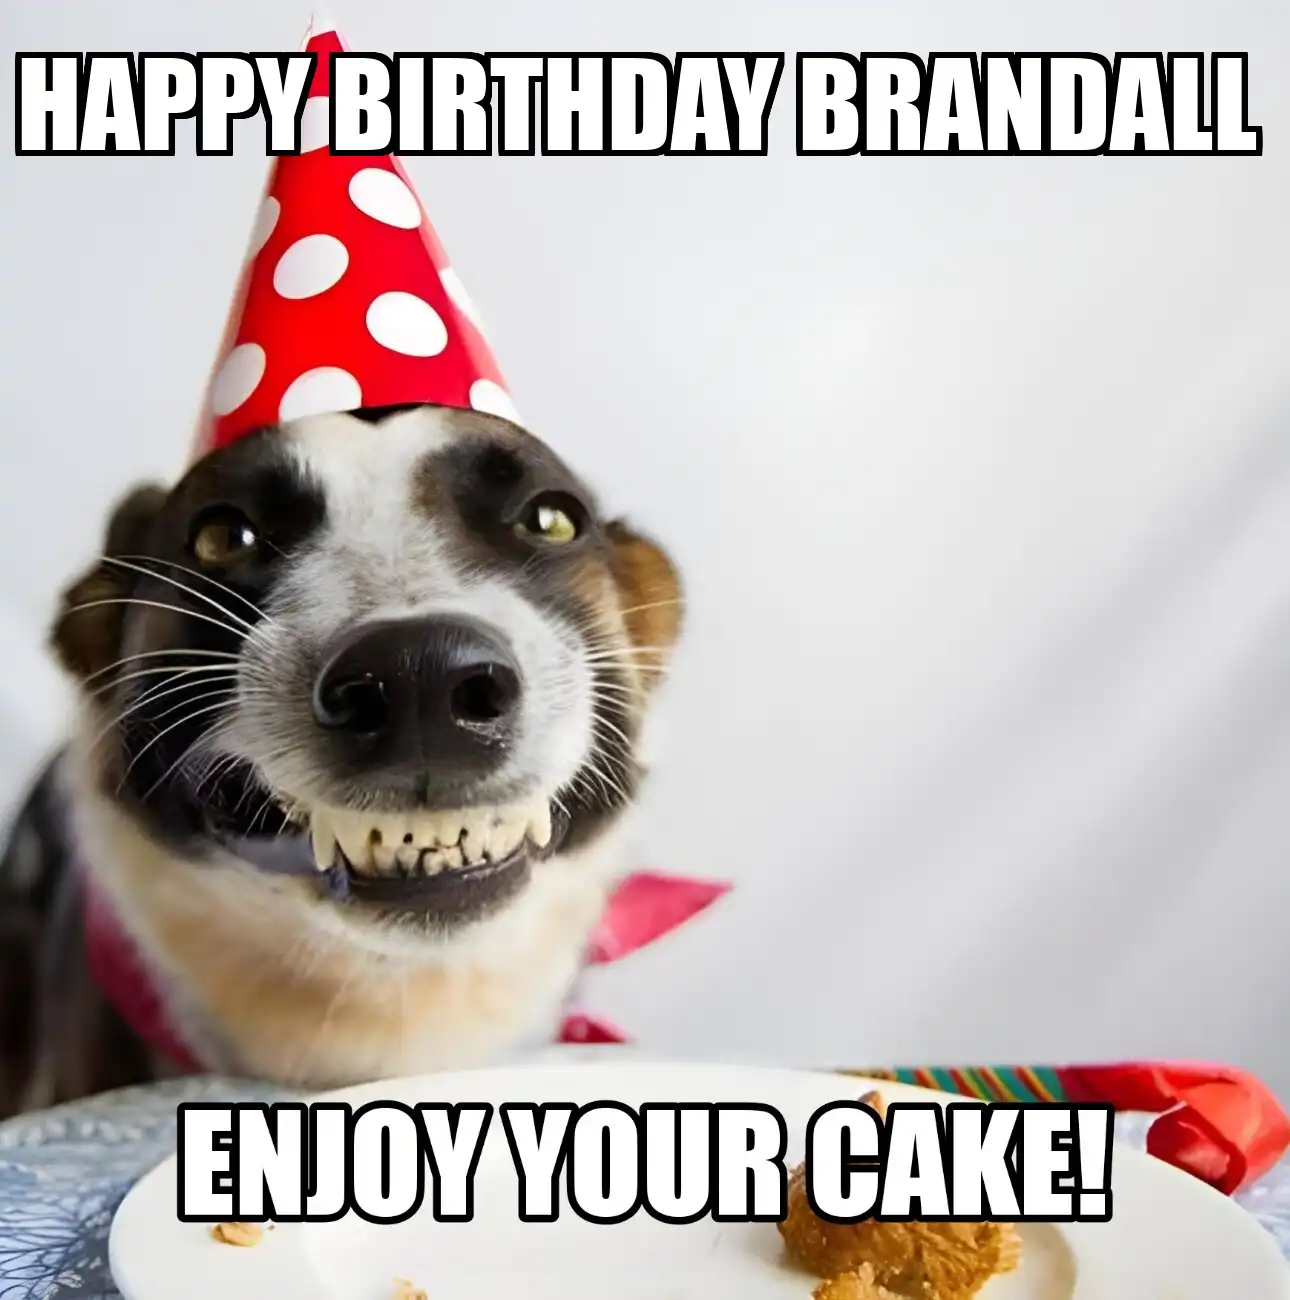 Happy Birthday Brandall Enjoy Your Cake Dog Meme